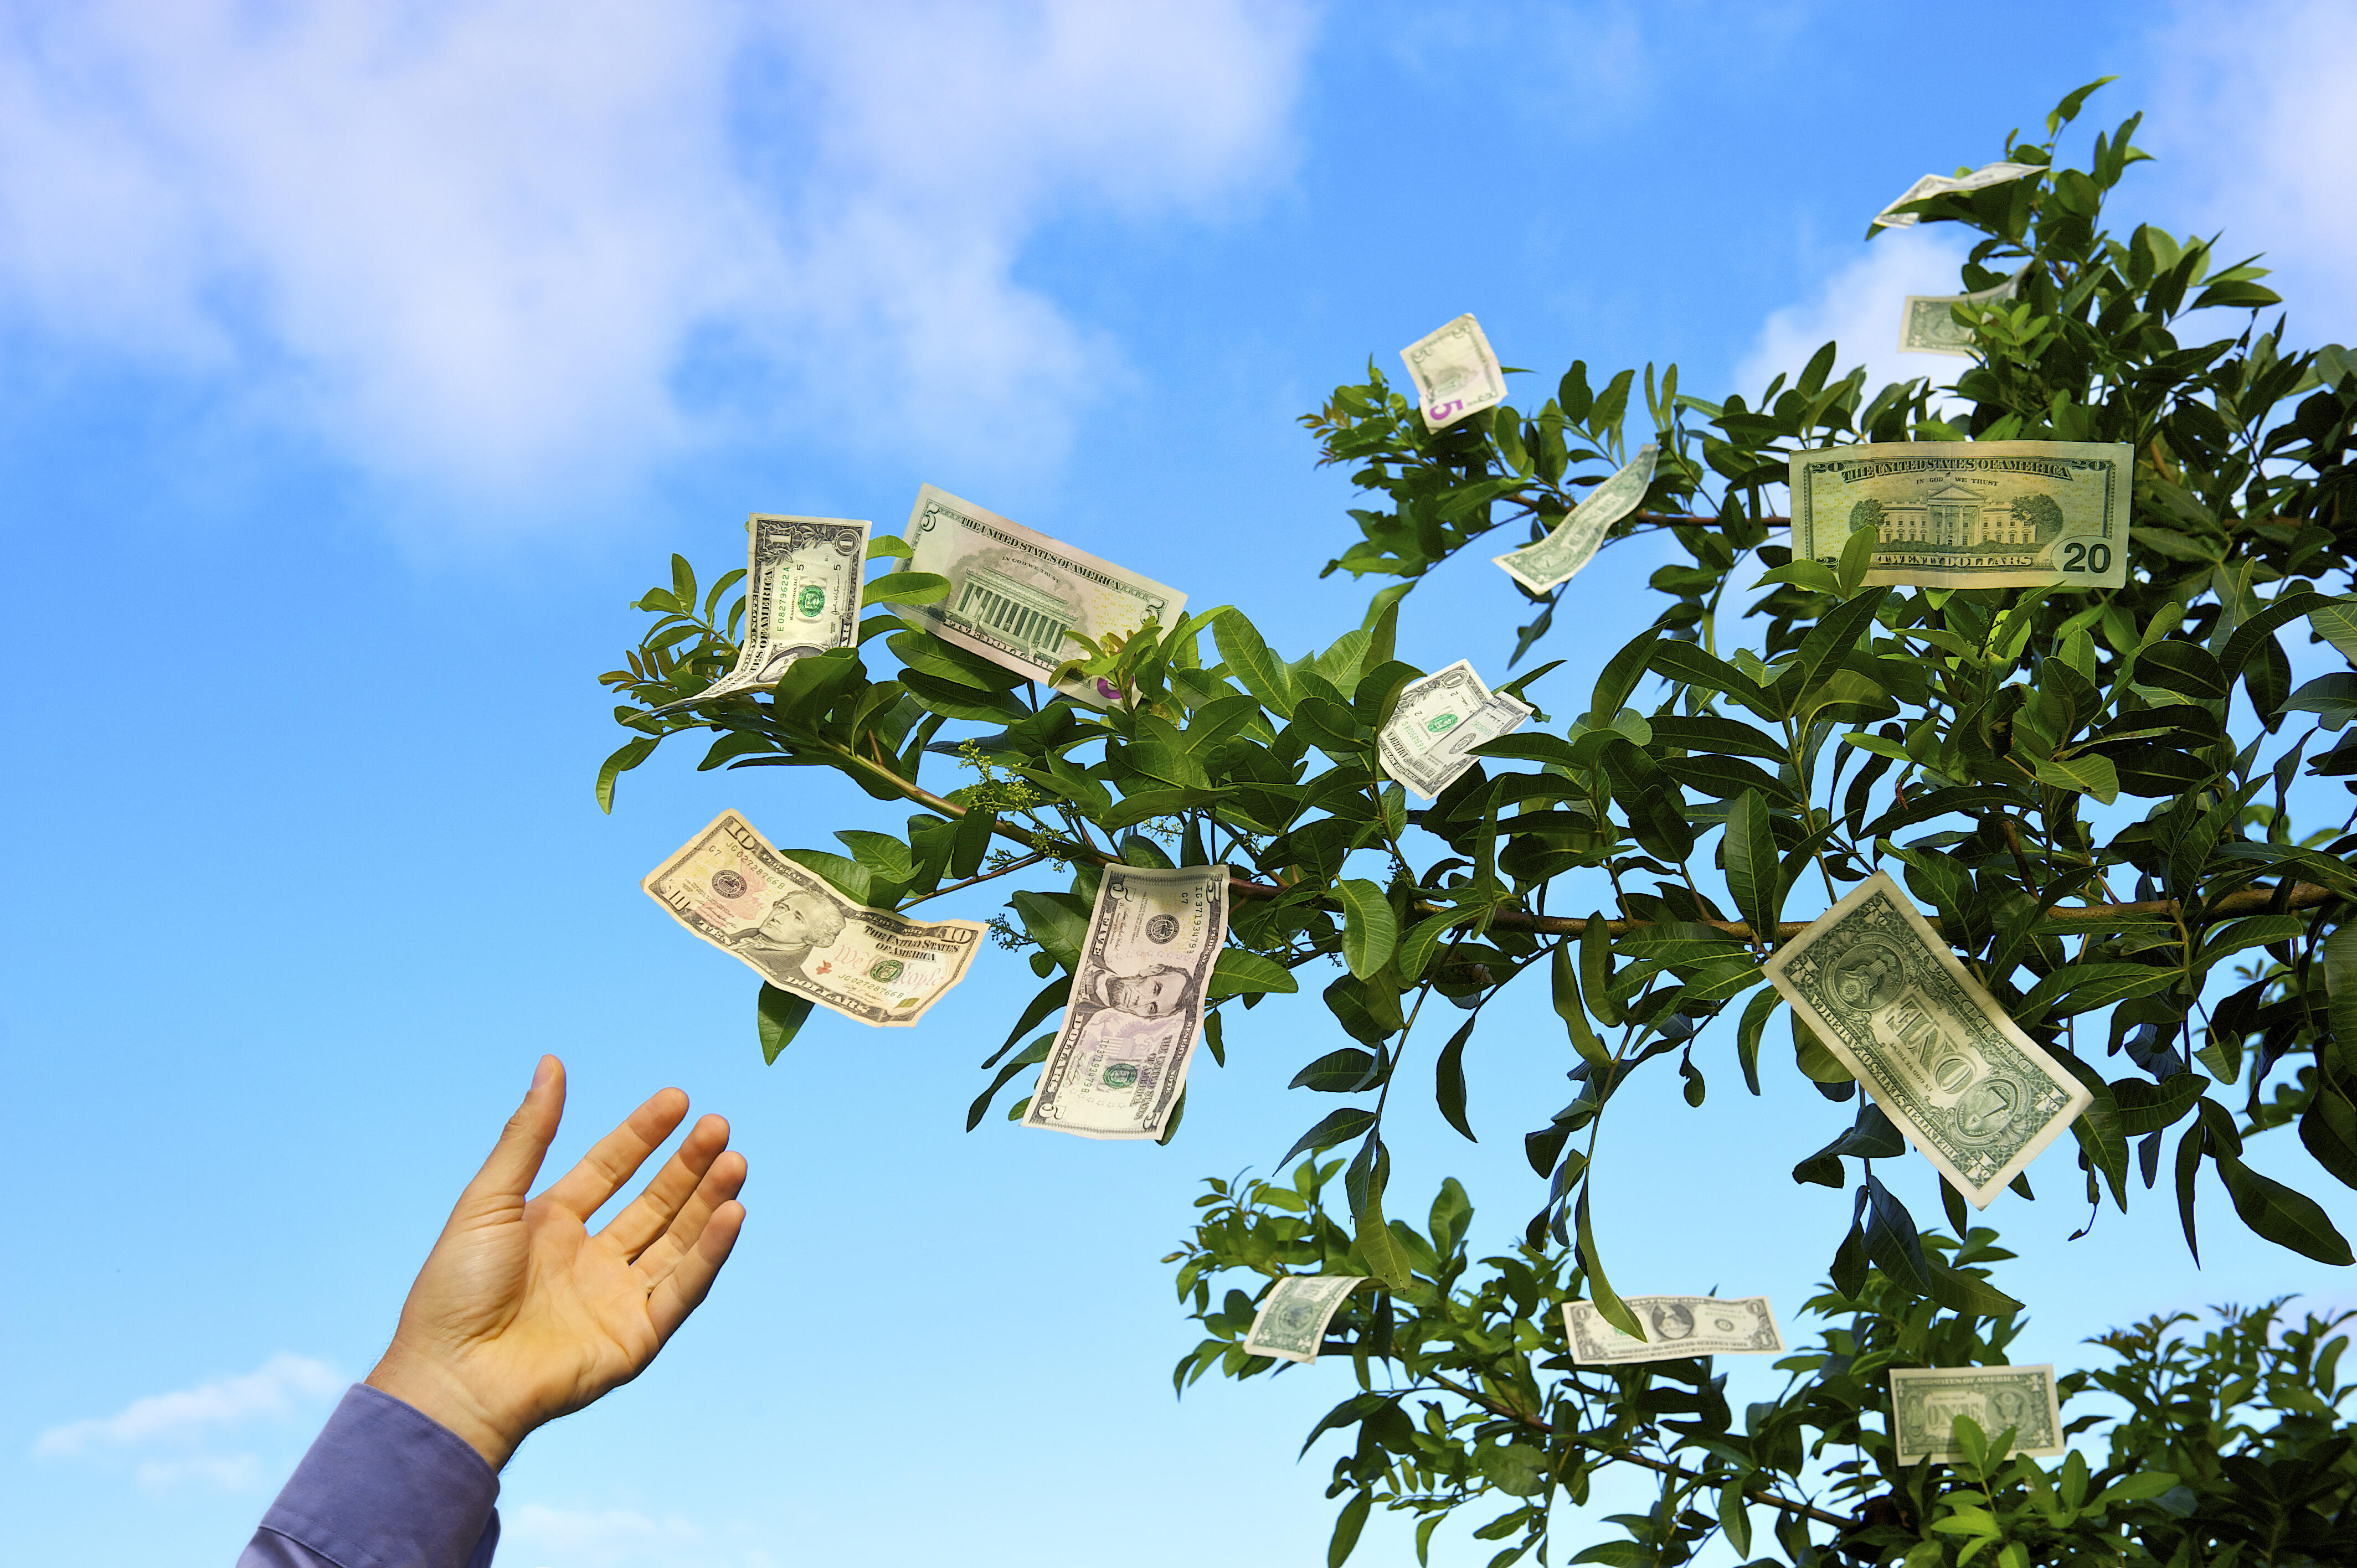 Березка деньги. Дерево с деньгами. Деньги растут на деревьях. Деньги и природа. Денежное дерево с купюрами.